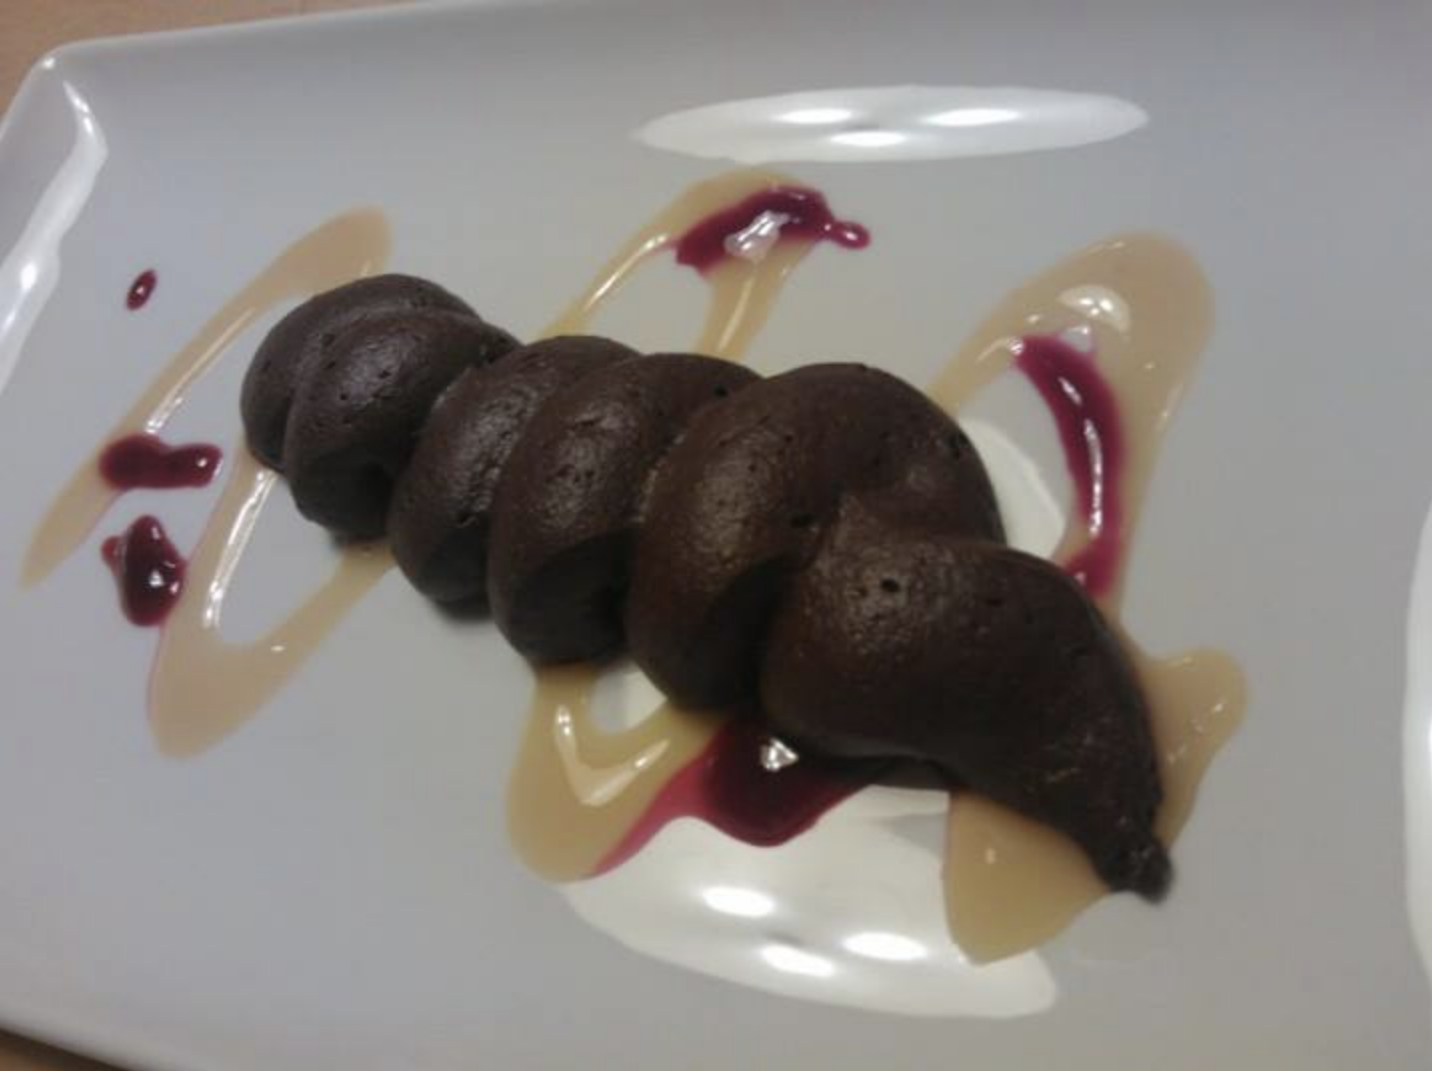 Chocolate dessert that looks like poop